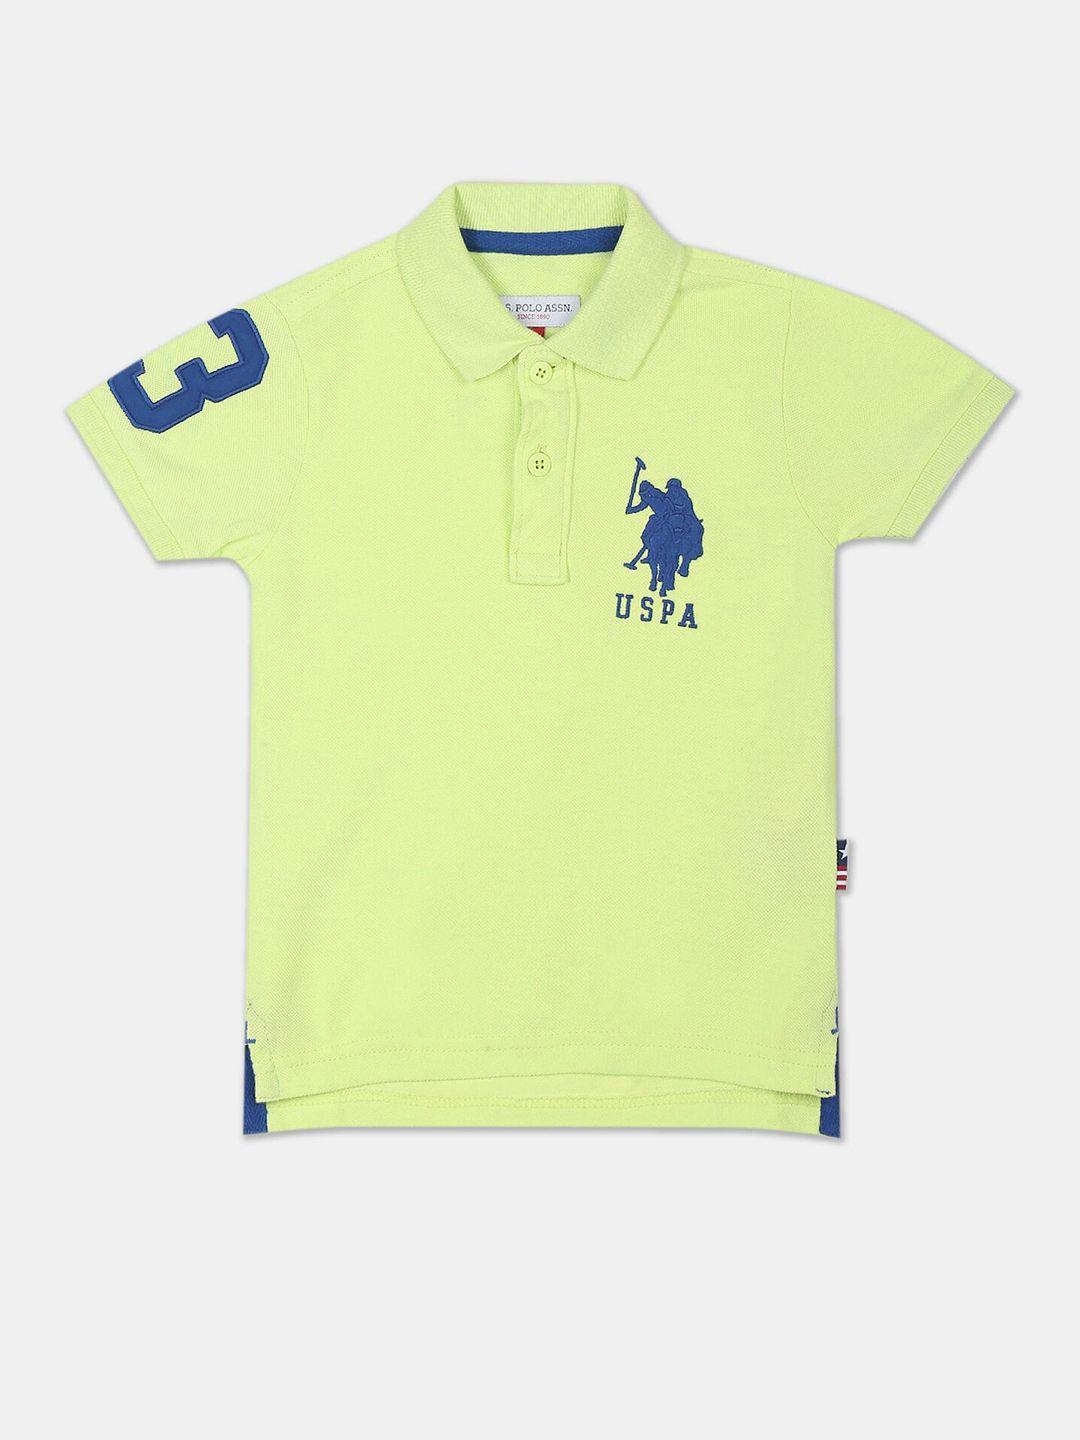 u-s-polo-assn-kids-boys-green-typography-pure-cotton-polo-collar-applique-t-shirt